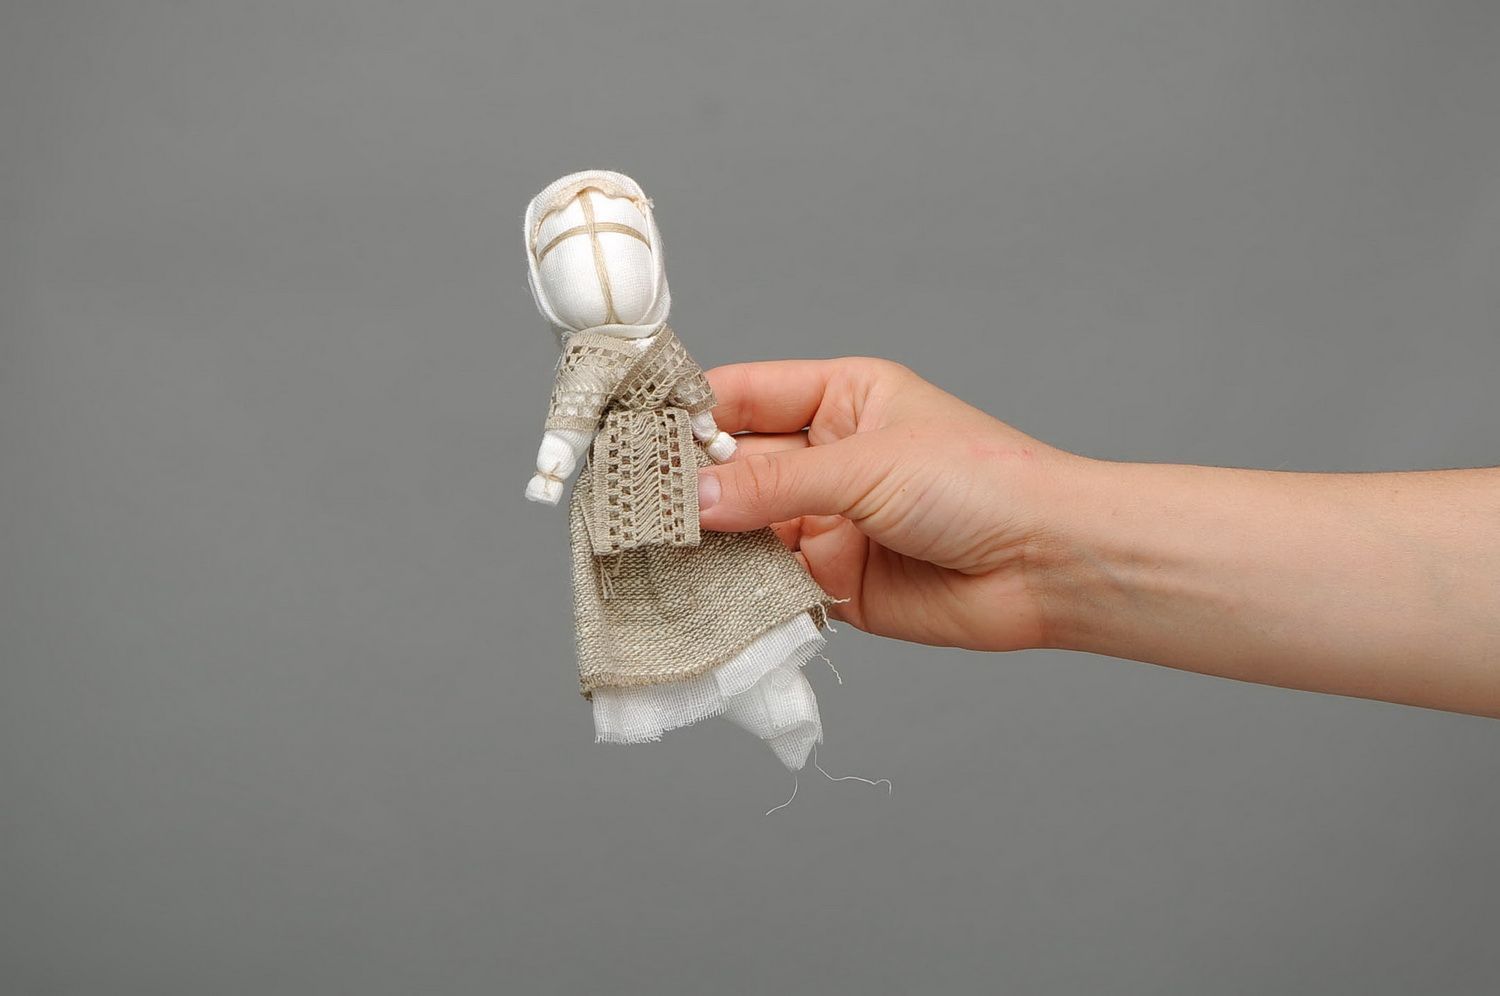 Bambola etnica di stoffa fatta a mano amuleto talismano giocattolo slavo  foto 2